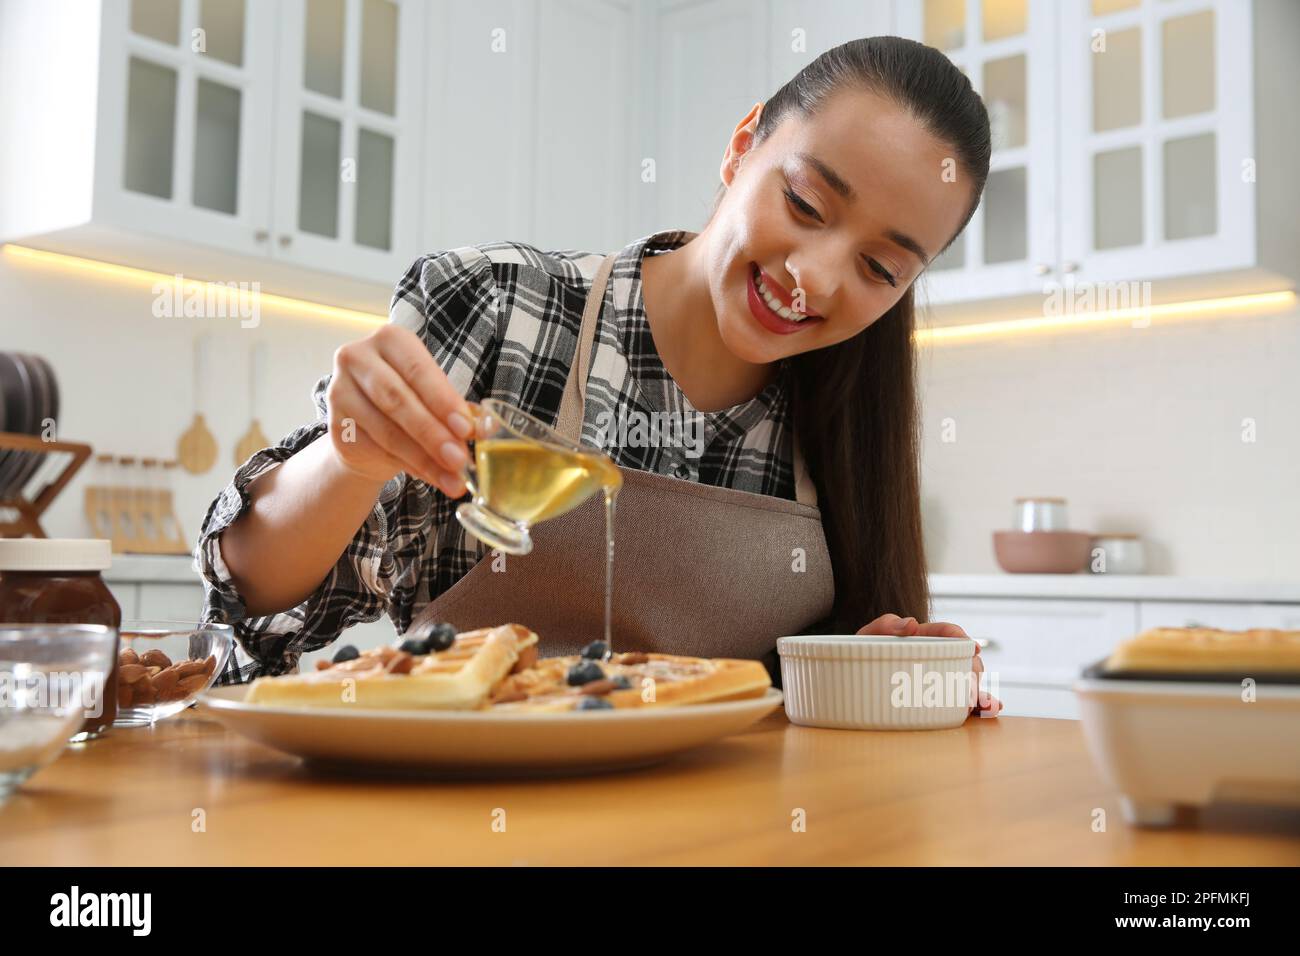 Frau, die Honig auf leckere belgische Waffeln am Holztisch in der Küche schüttete Stockfoto